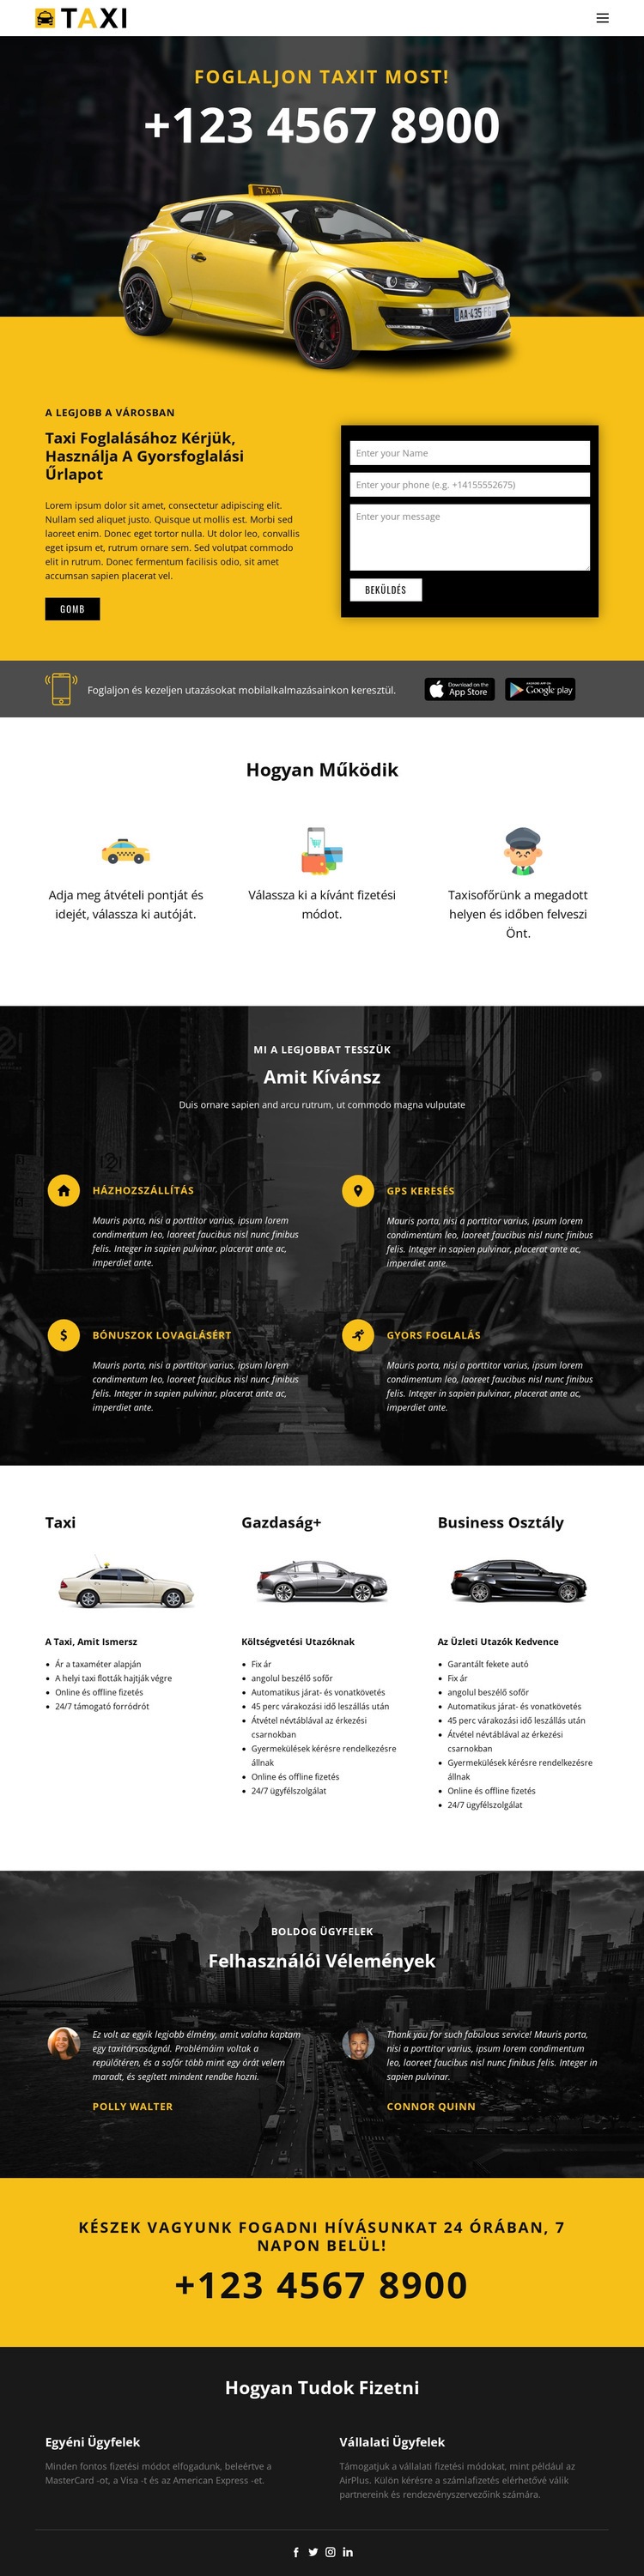 A leggyorsabb taxi autók Weboldal tervezés